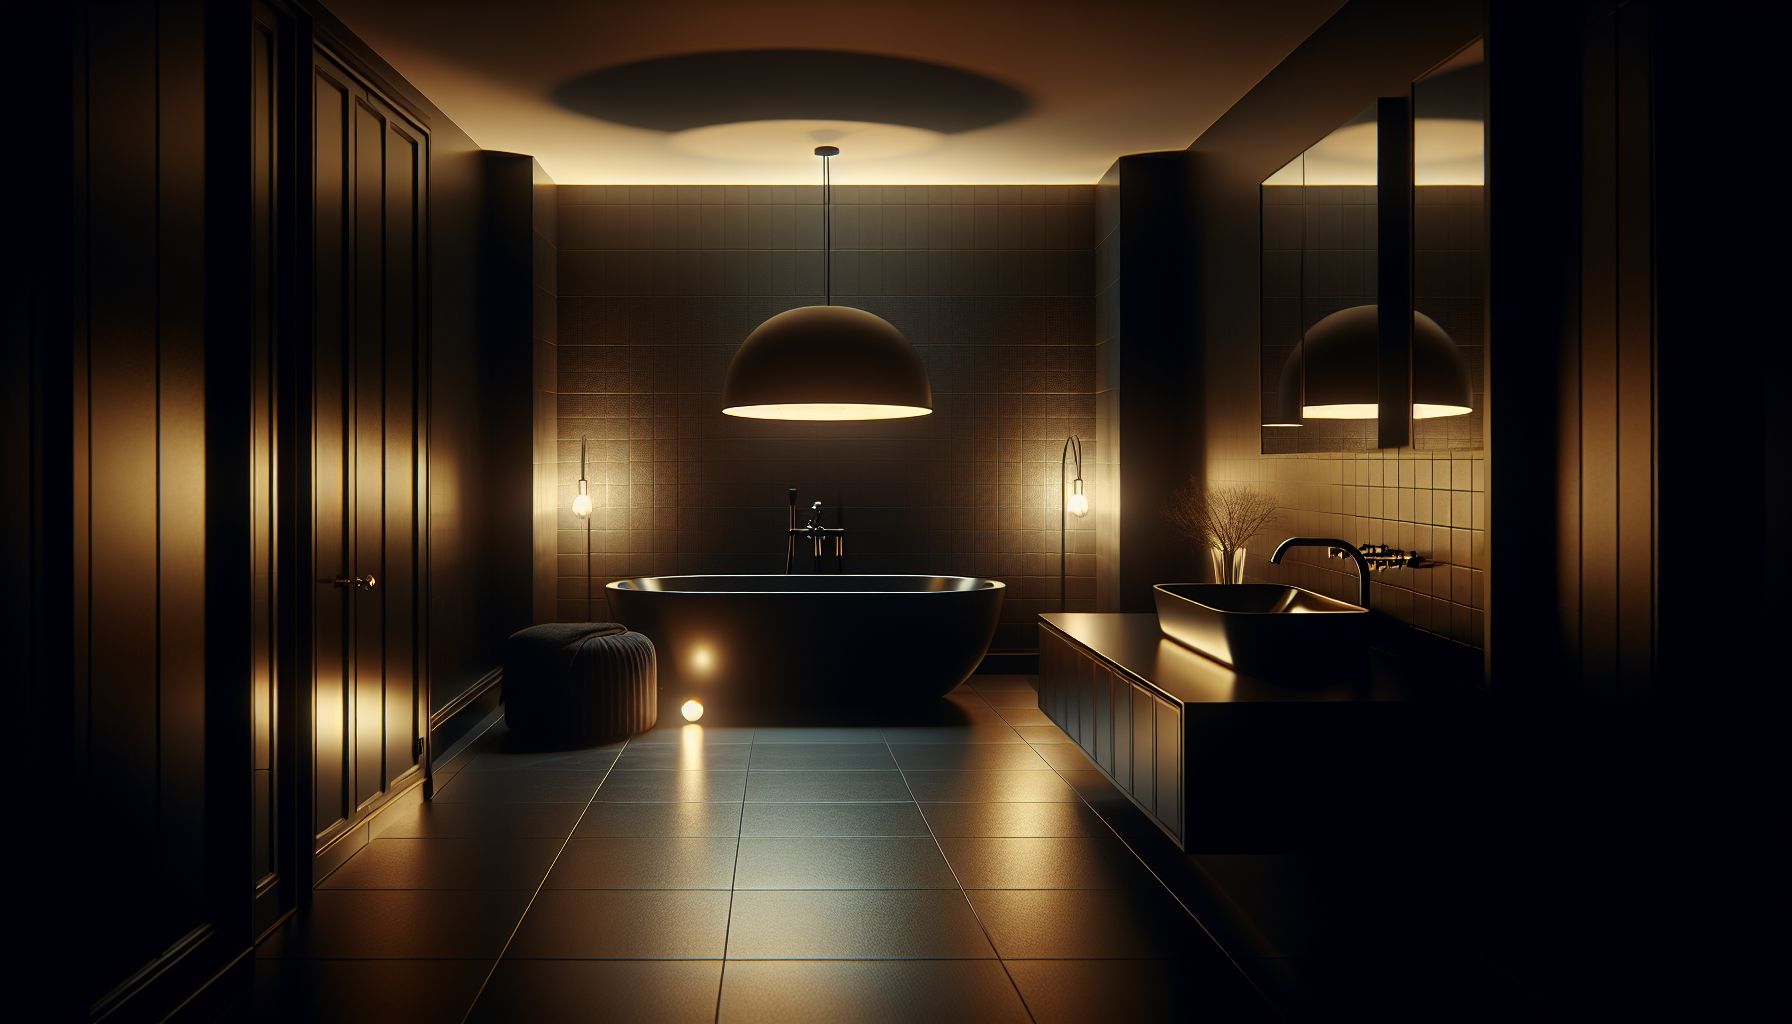 Stimmungsvolle Beleuchtung in einem eleganten schwarzen Badezimmer